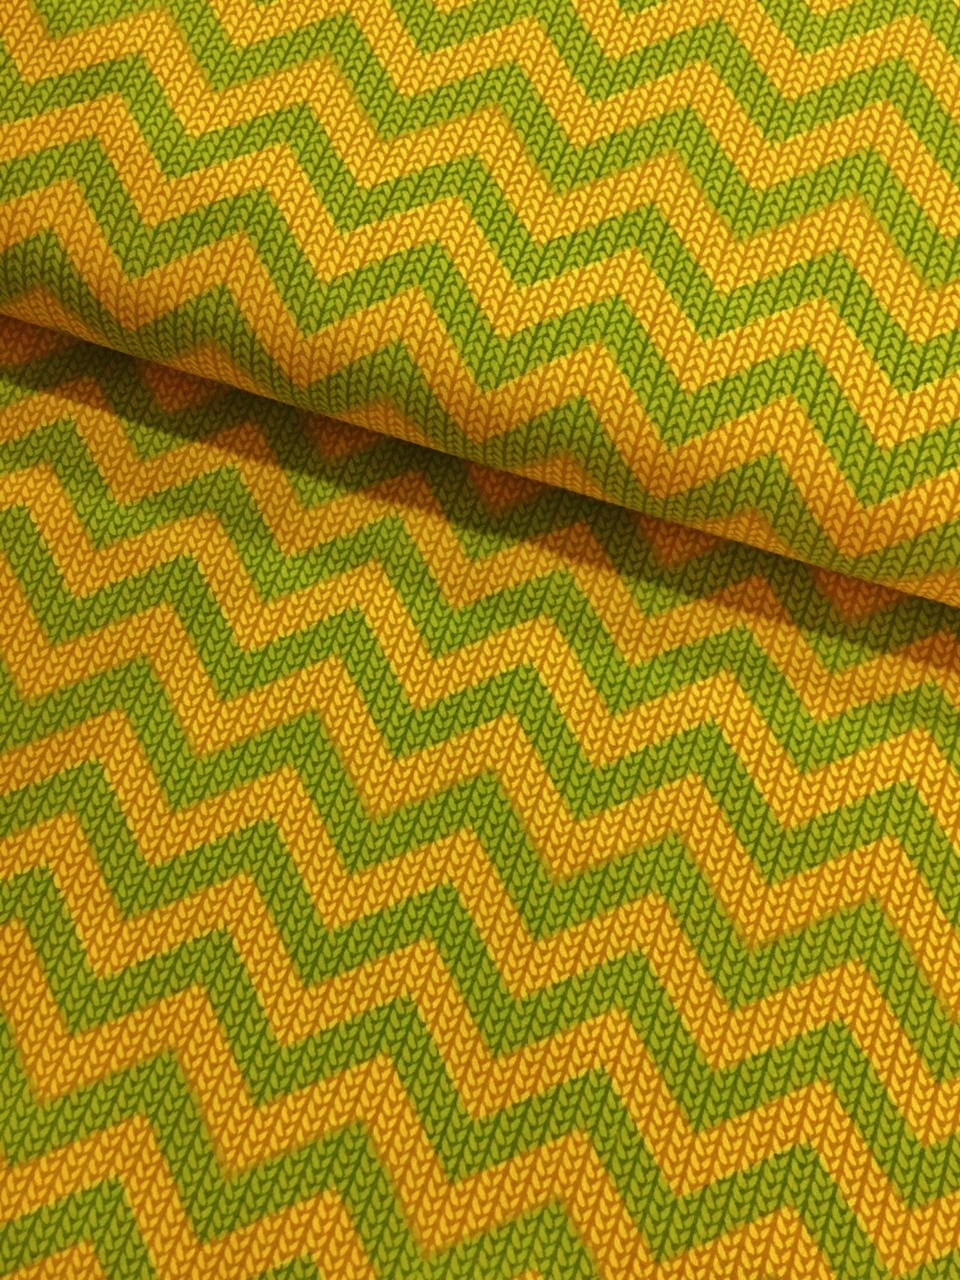 Retalho Tecido Trico Chevron Verde e Amarelo (60x34cm)